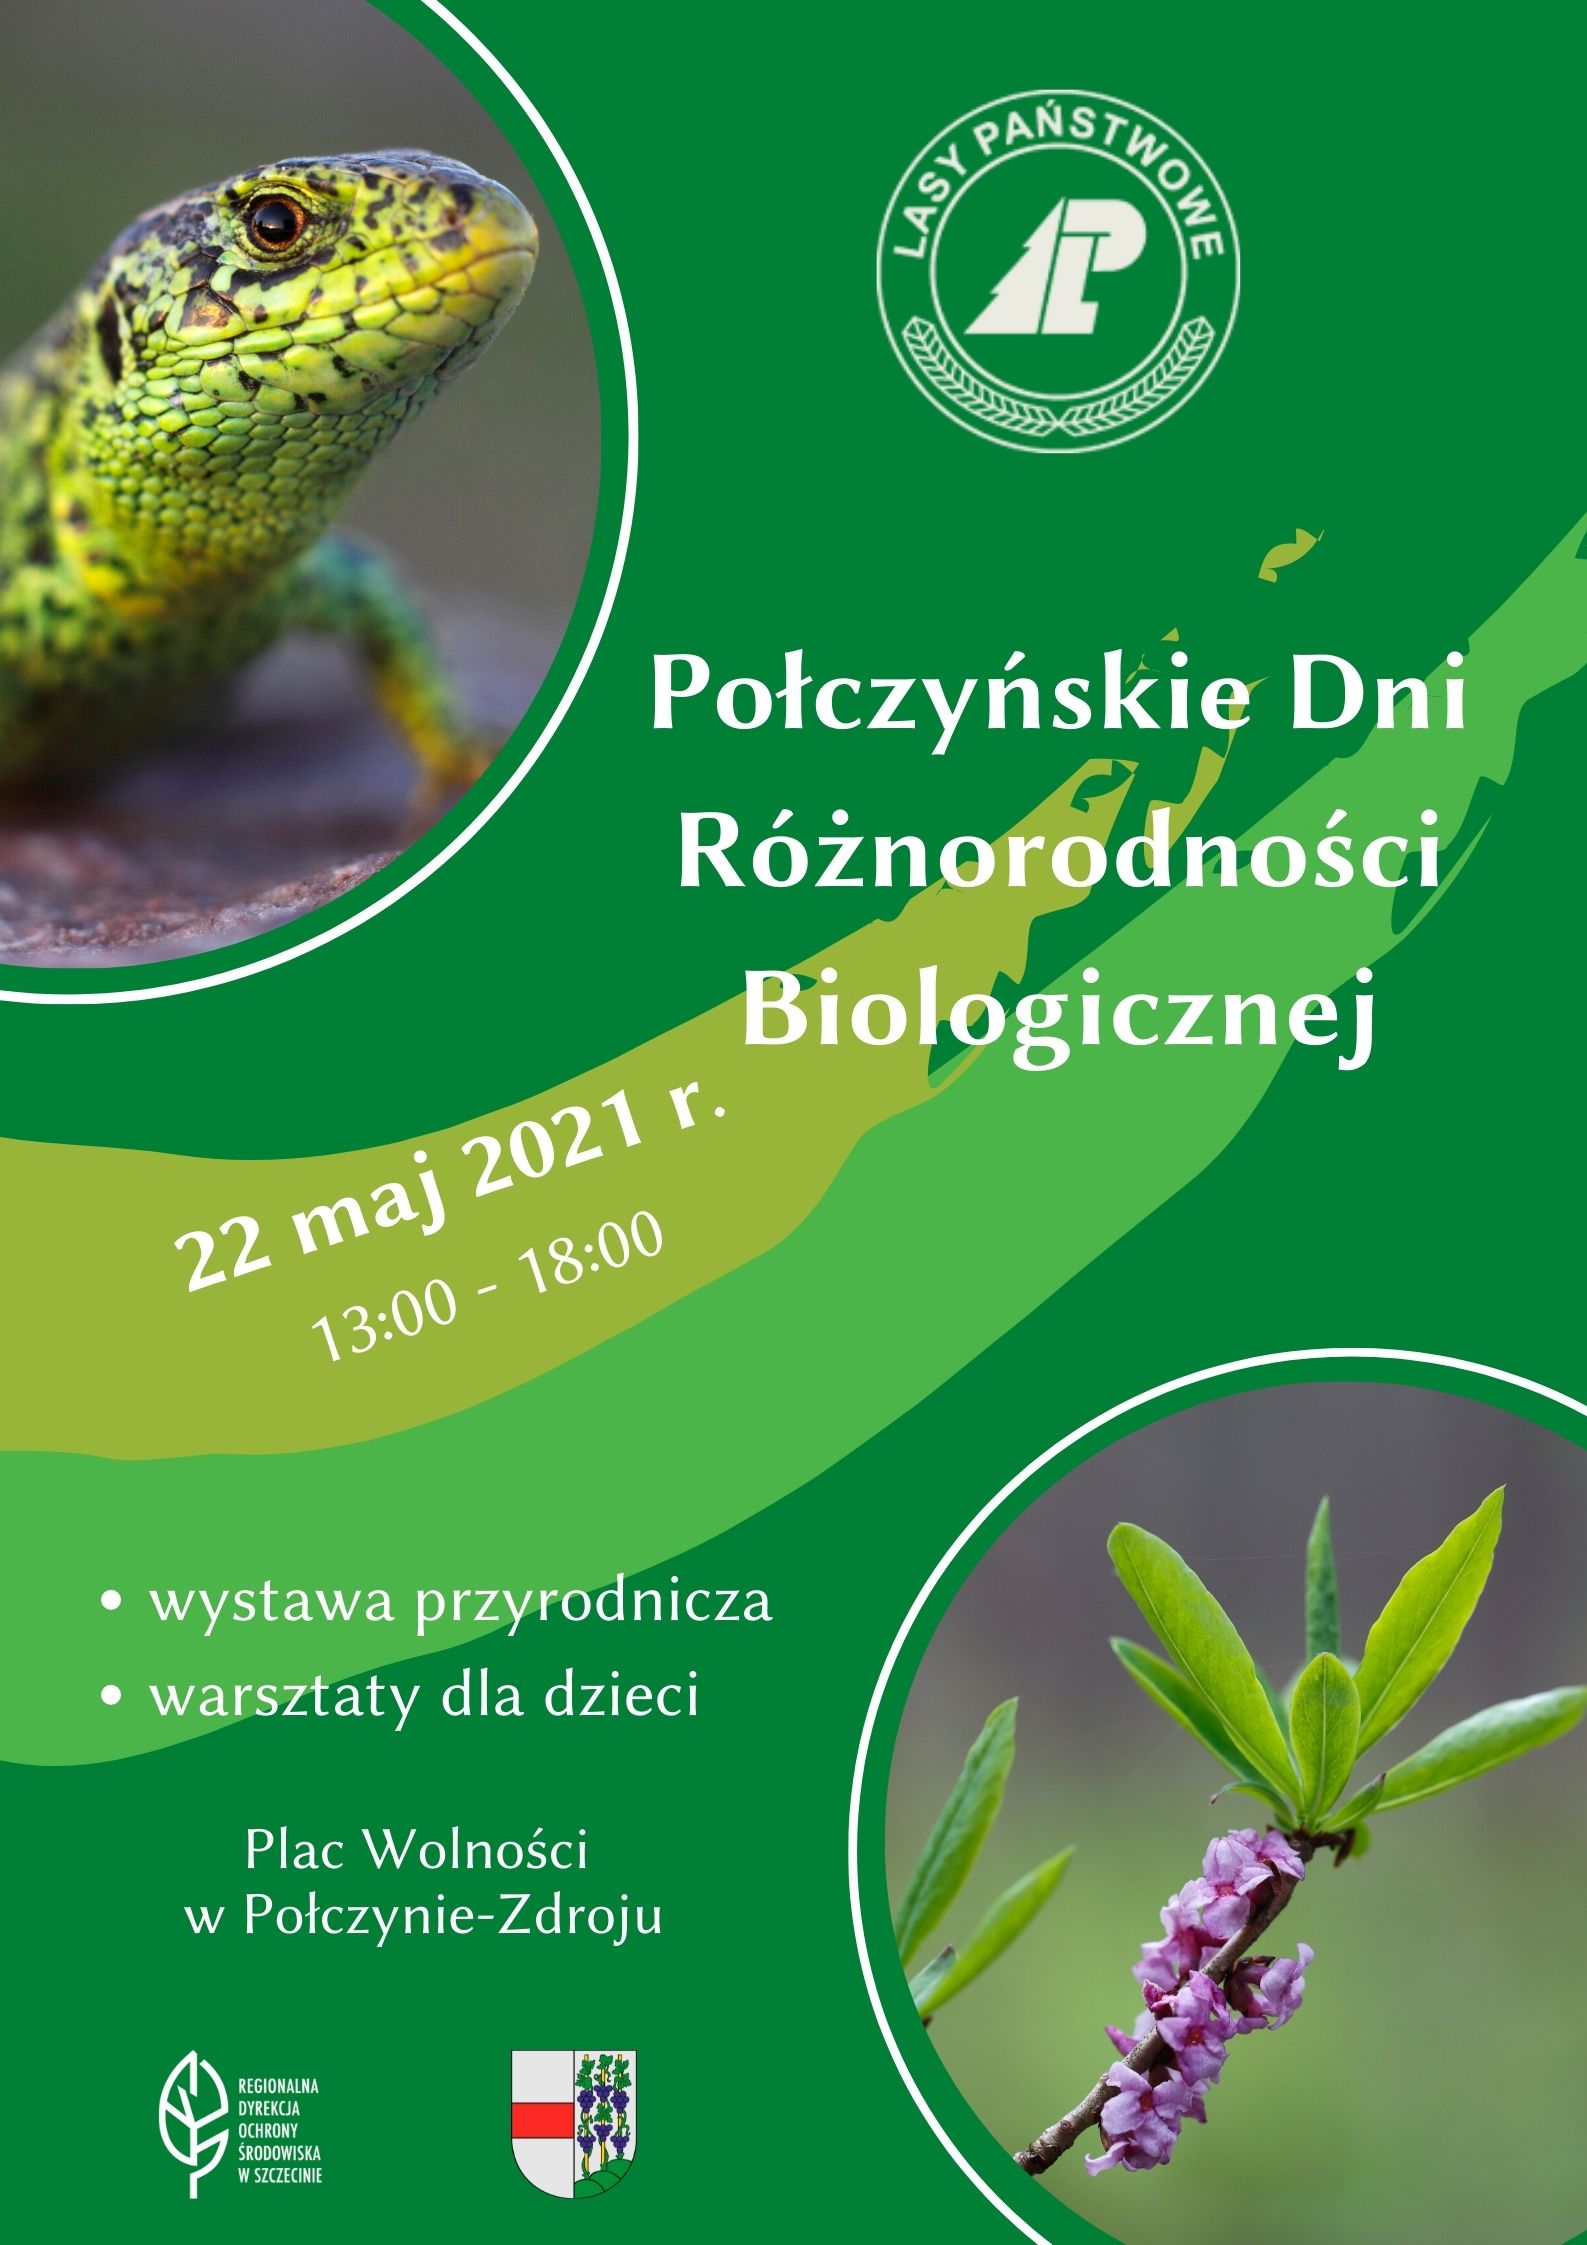 images/Poczyskie1.jpg